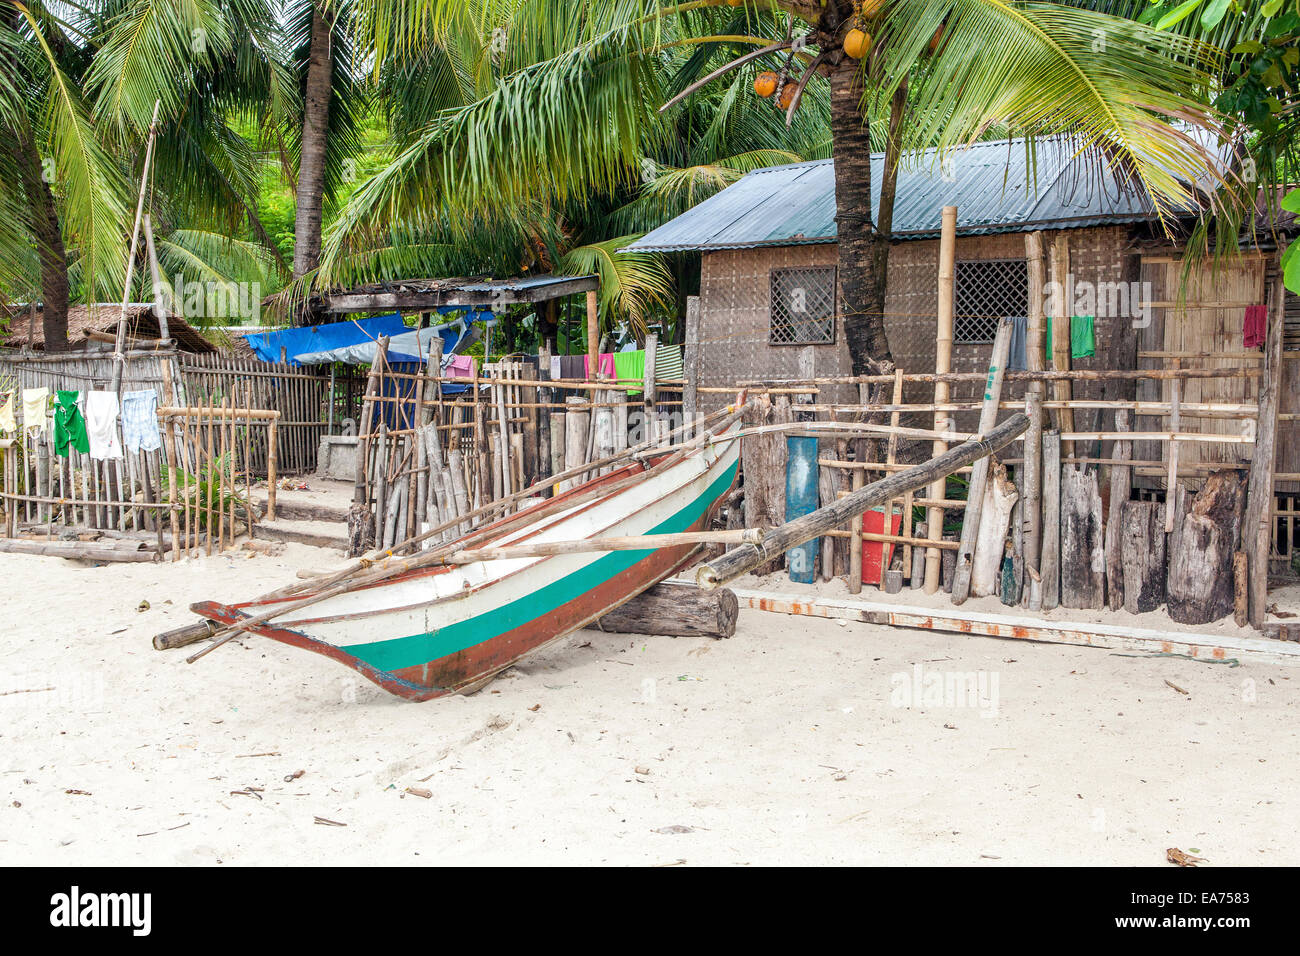 Nueva Valencia, l'île de Guimaras, Philippines - un petit ponton bateau de pêche est attaché à une clôture de bois flotté. Banque D'Images